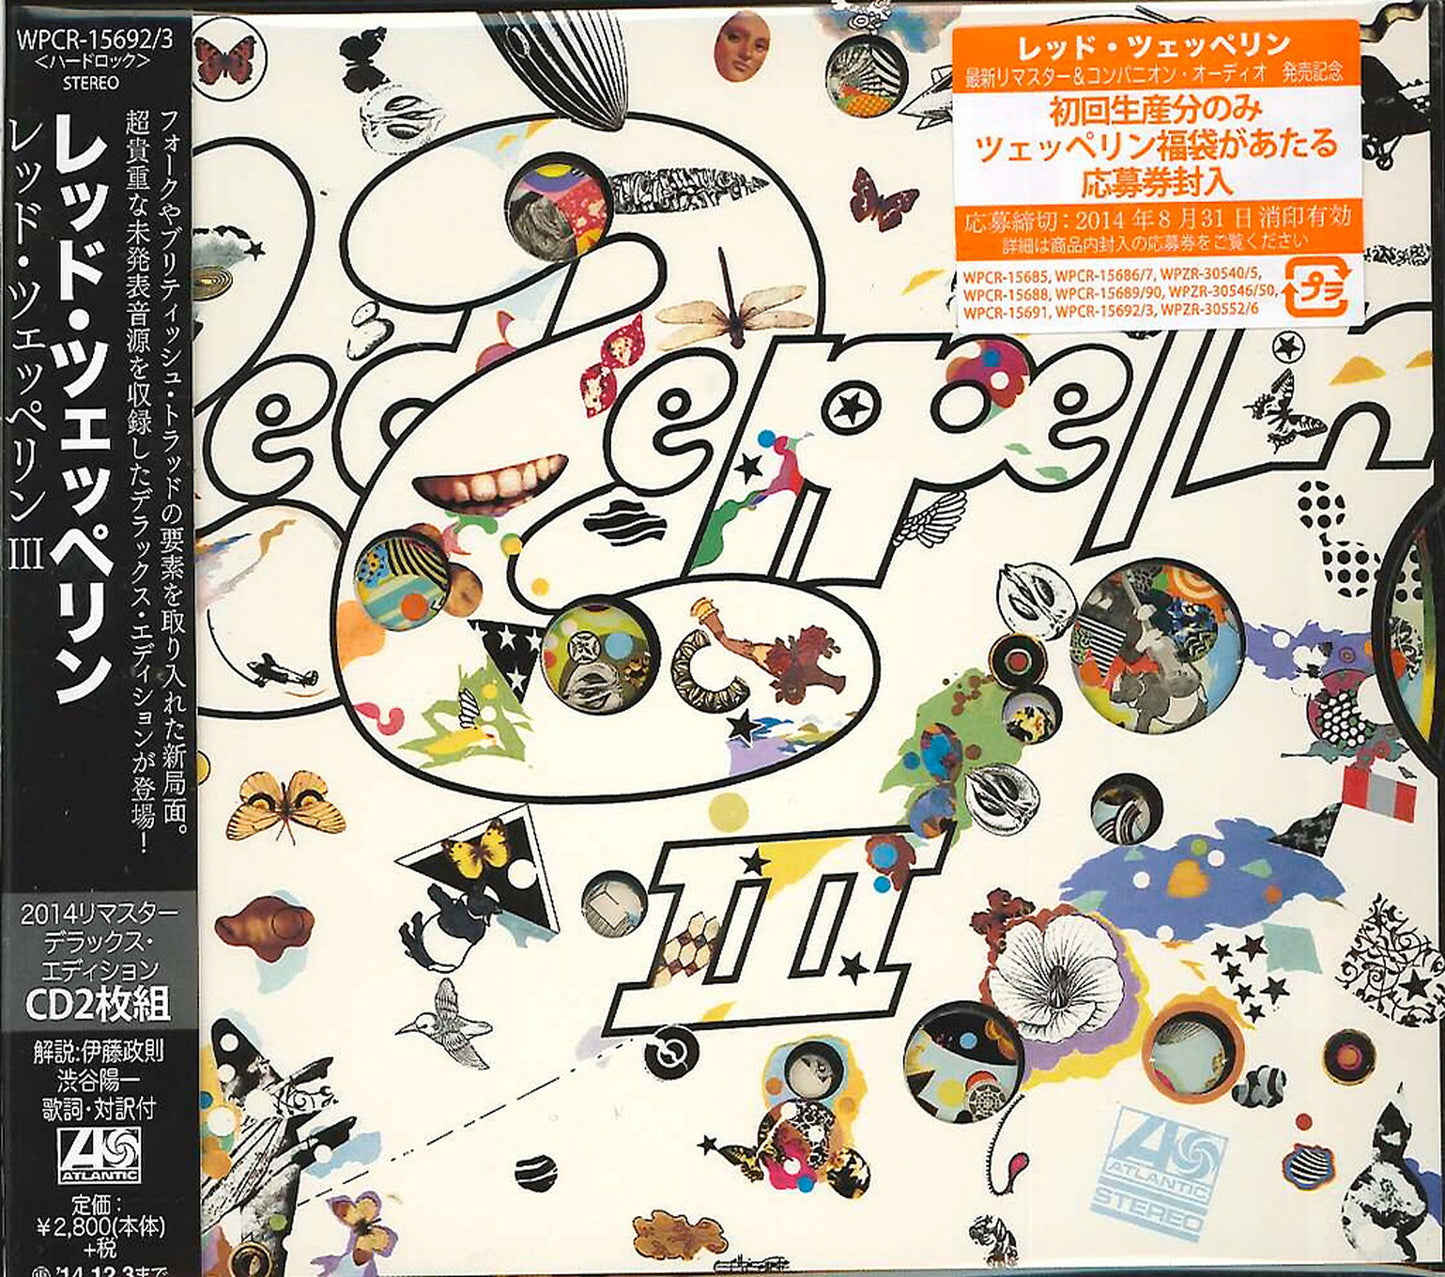 Led Zeppelin - Led Zeppelin Iii Deluxe Edition - Japan  2 CD